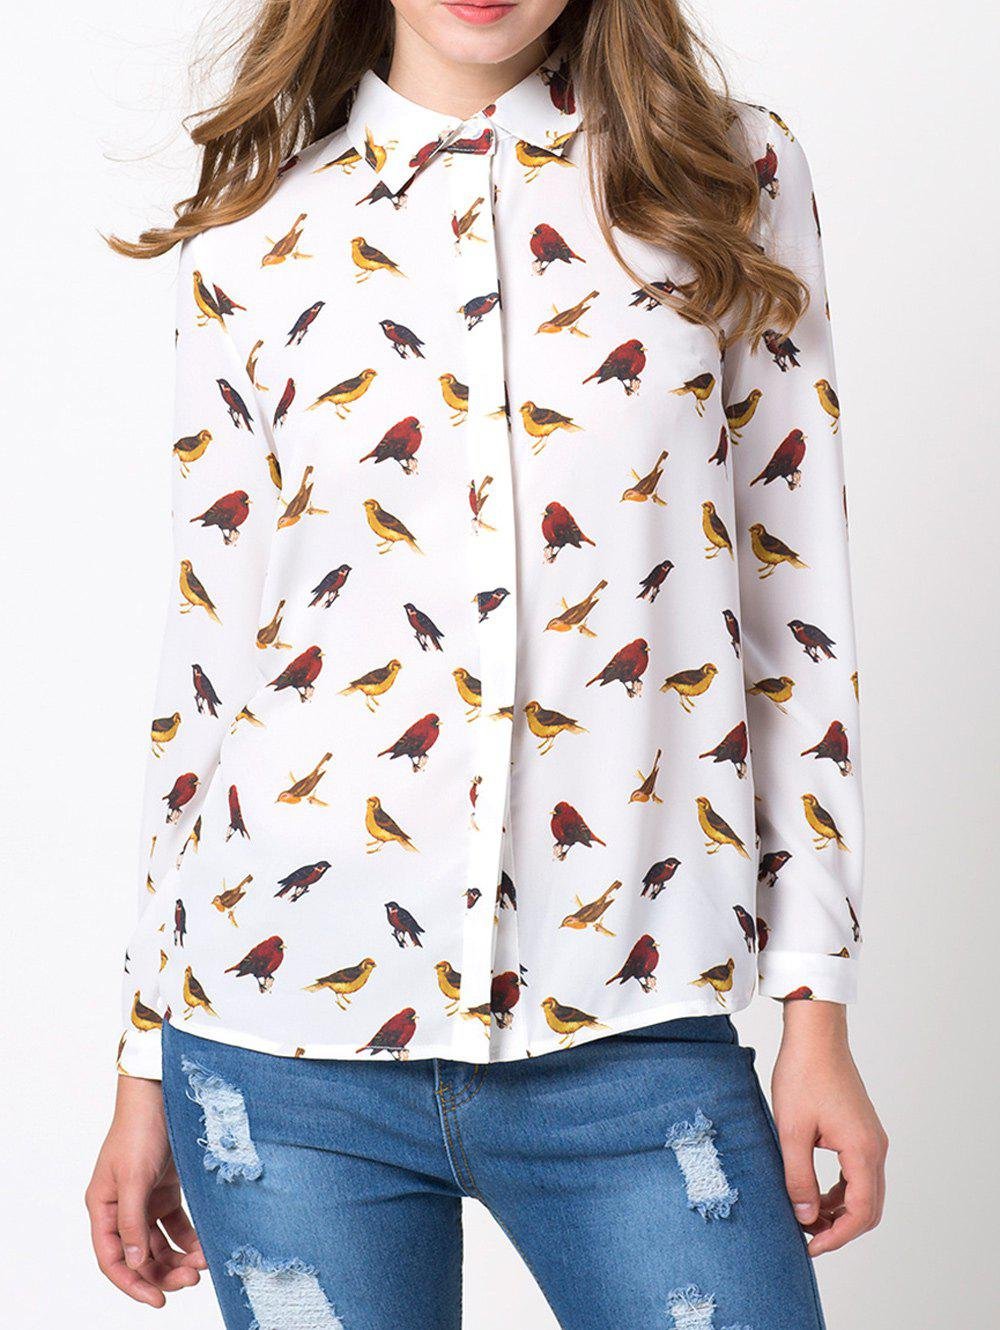 Женские блузки с принтом. Блузка с птичками. Блузка с принтом. Рубашка женская с принтом. Рубашка с птичками.